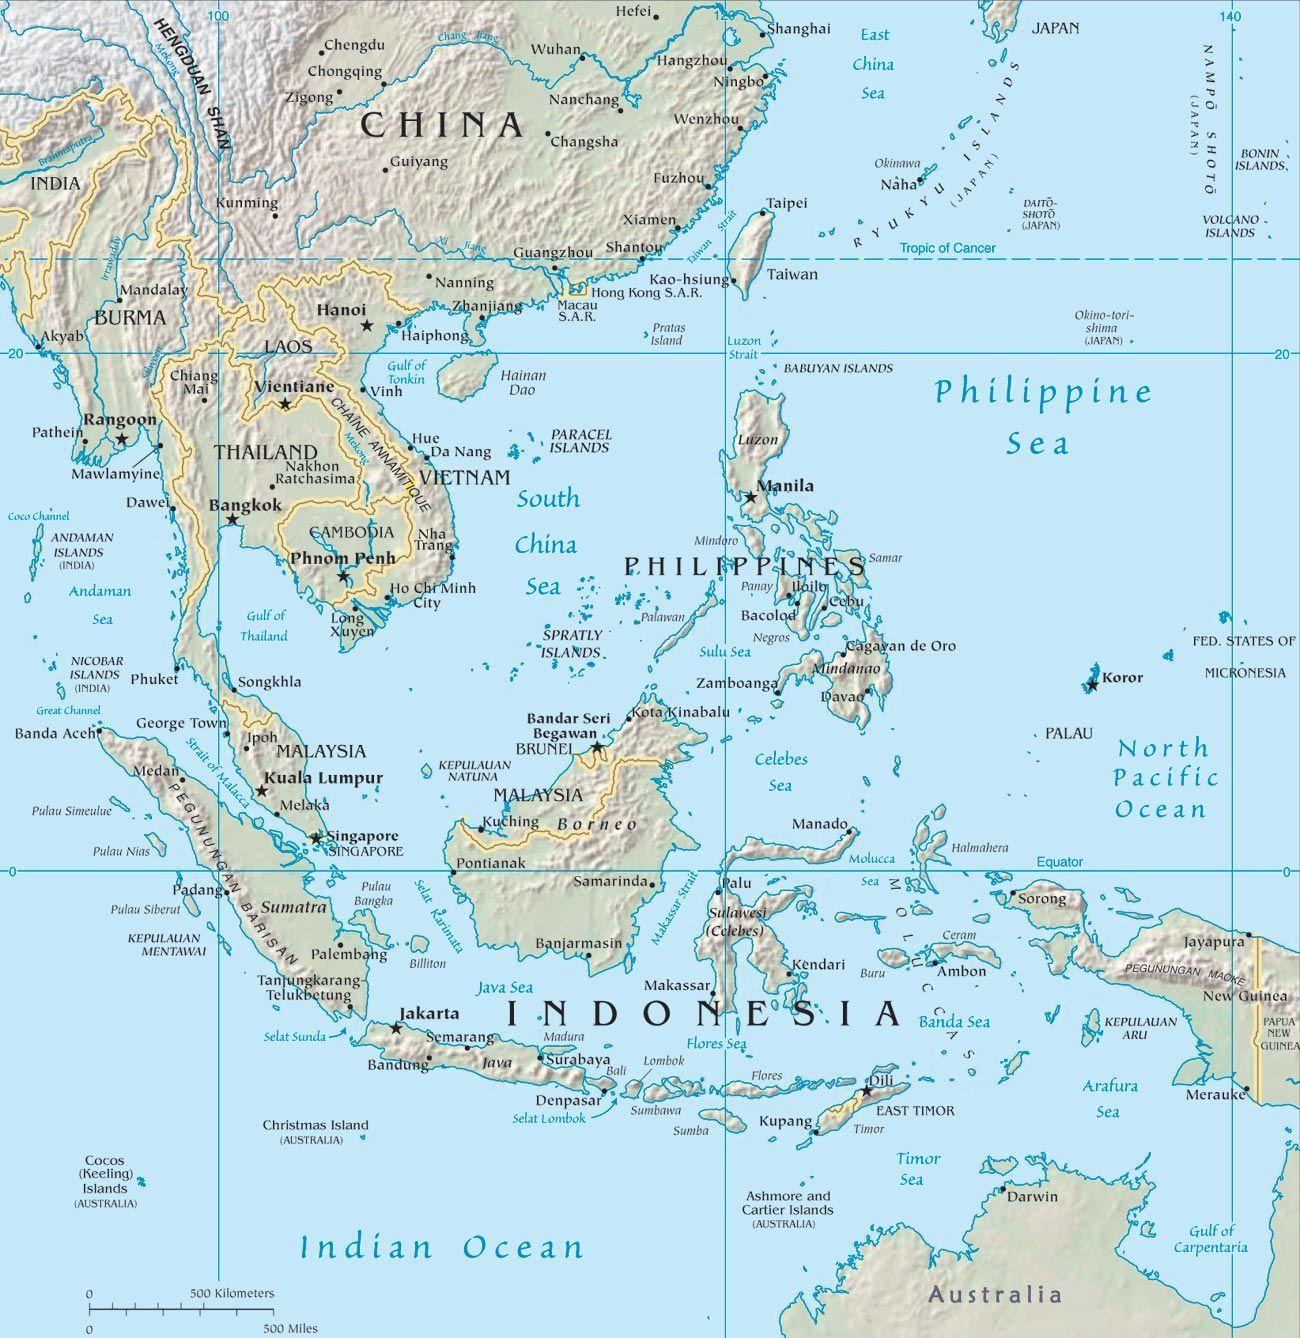 Malesia maa kartta - Kartta malesian ja lähialueen maissa (Etelä-Itä-Aasia  - Aasia)